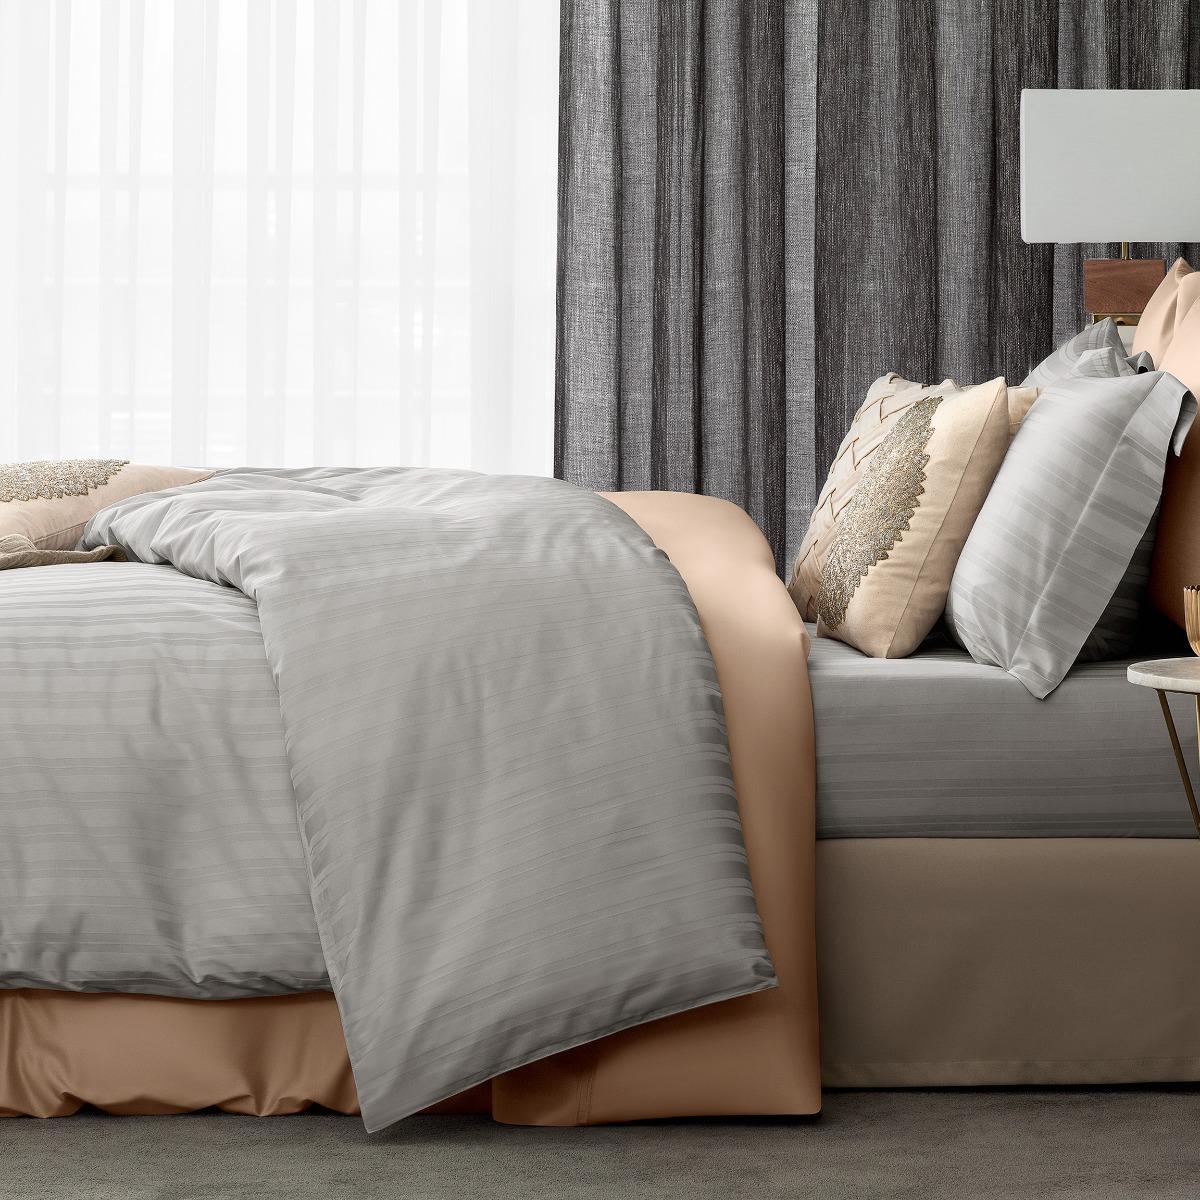 Комплект постельного белья Togas Барнетт Двуспальный кинг сайз светло-серый, размер Двуспальный евро - фото 2